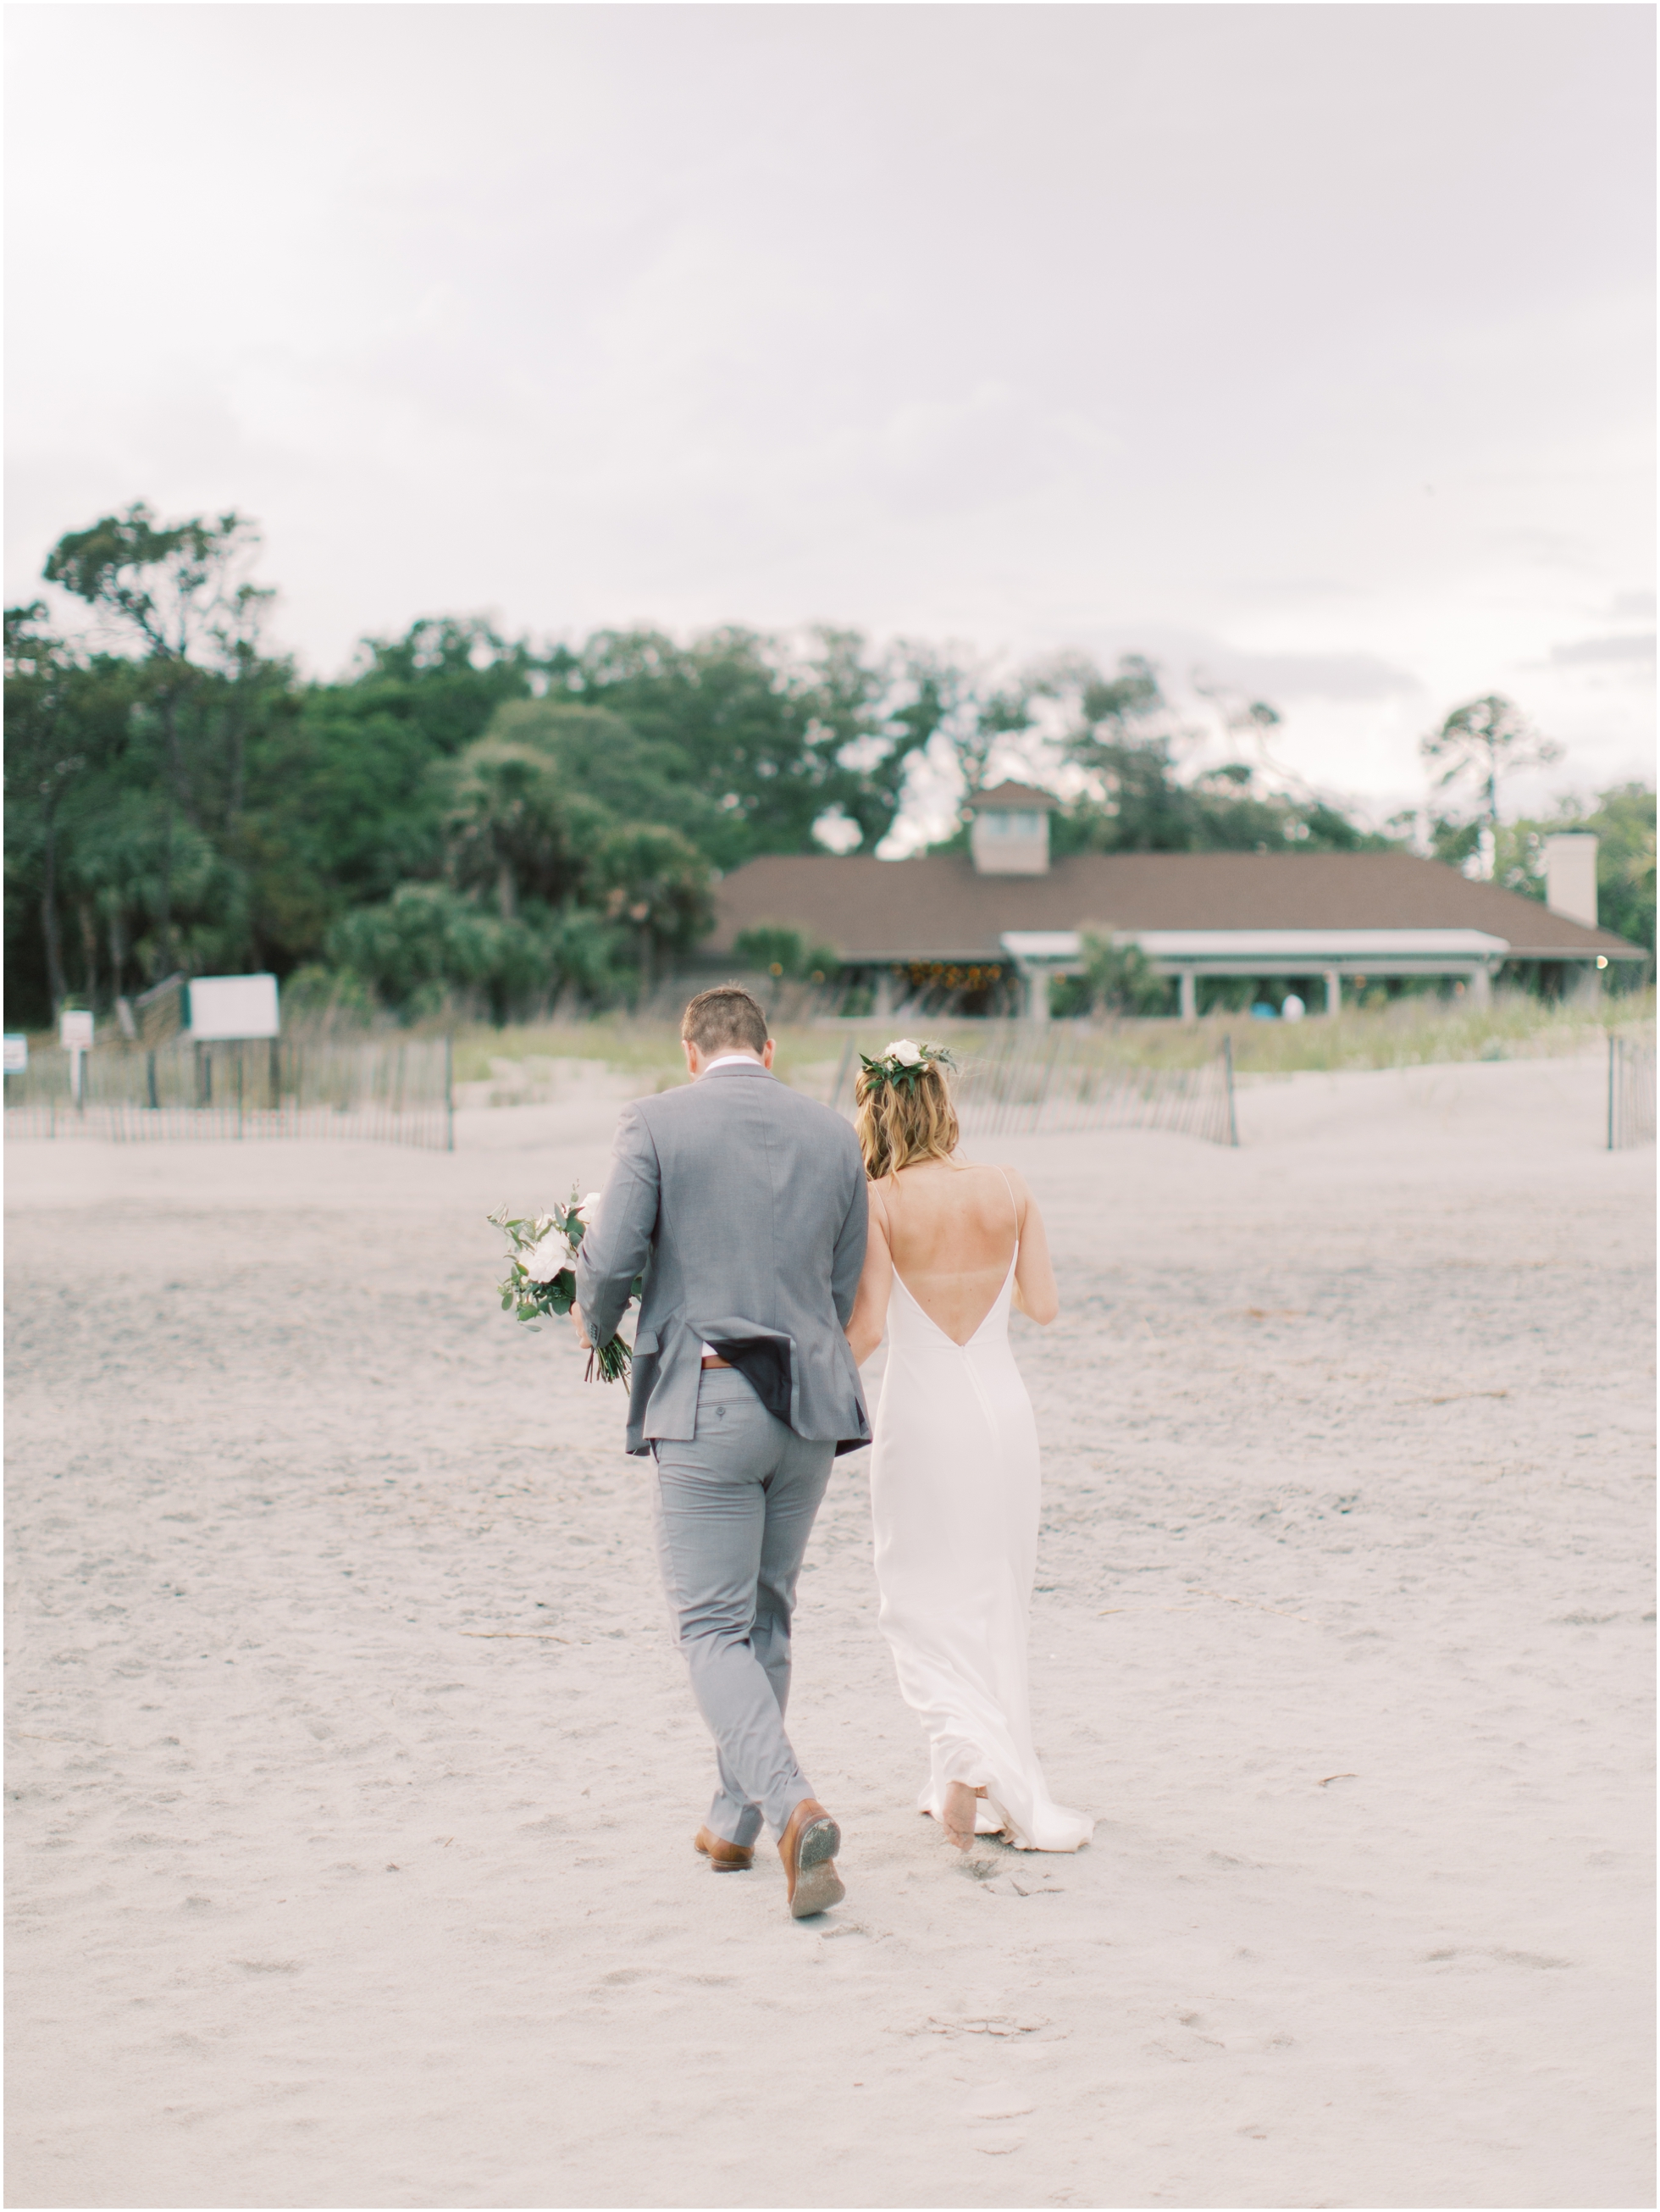 A Breezy Beach Wedding at the Omni Hilton Head Resort